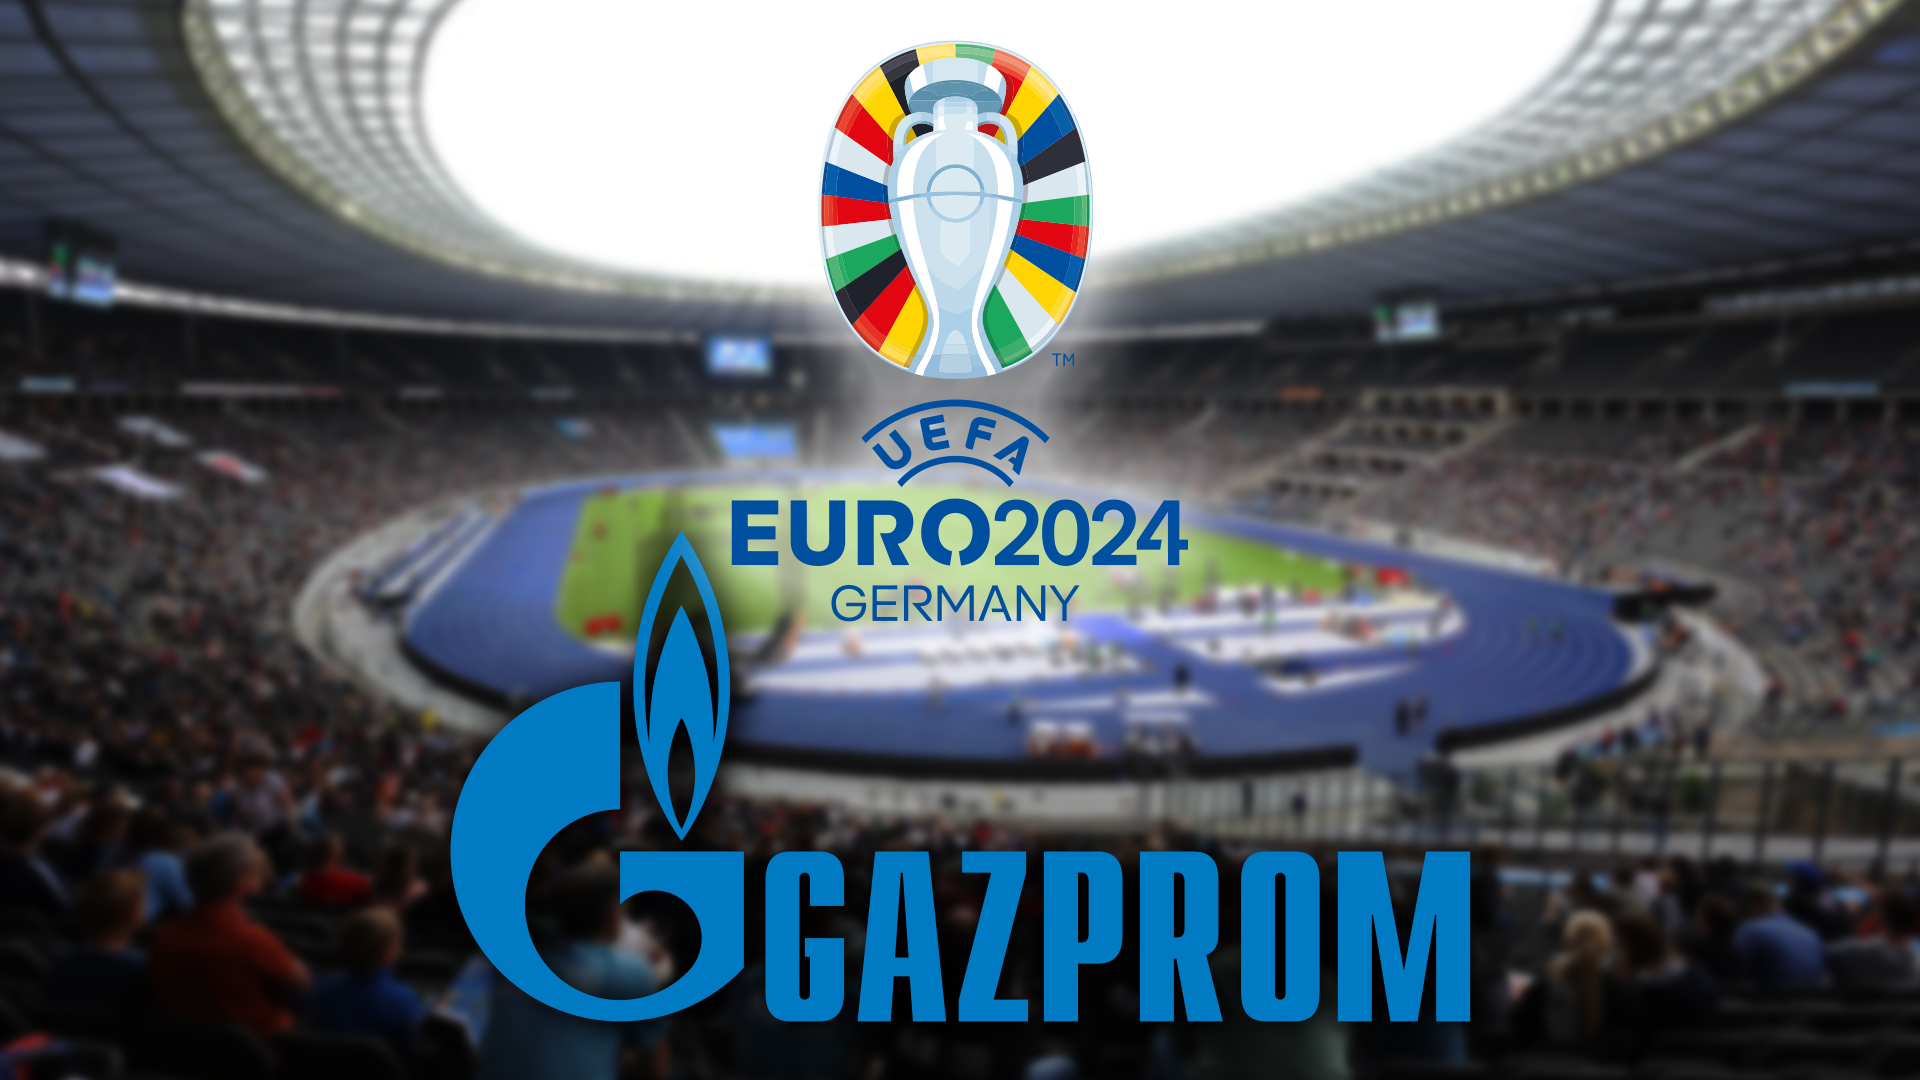 Die EURO 2024 in Deutschland - mit Gazprom als Sponsor?